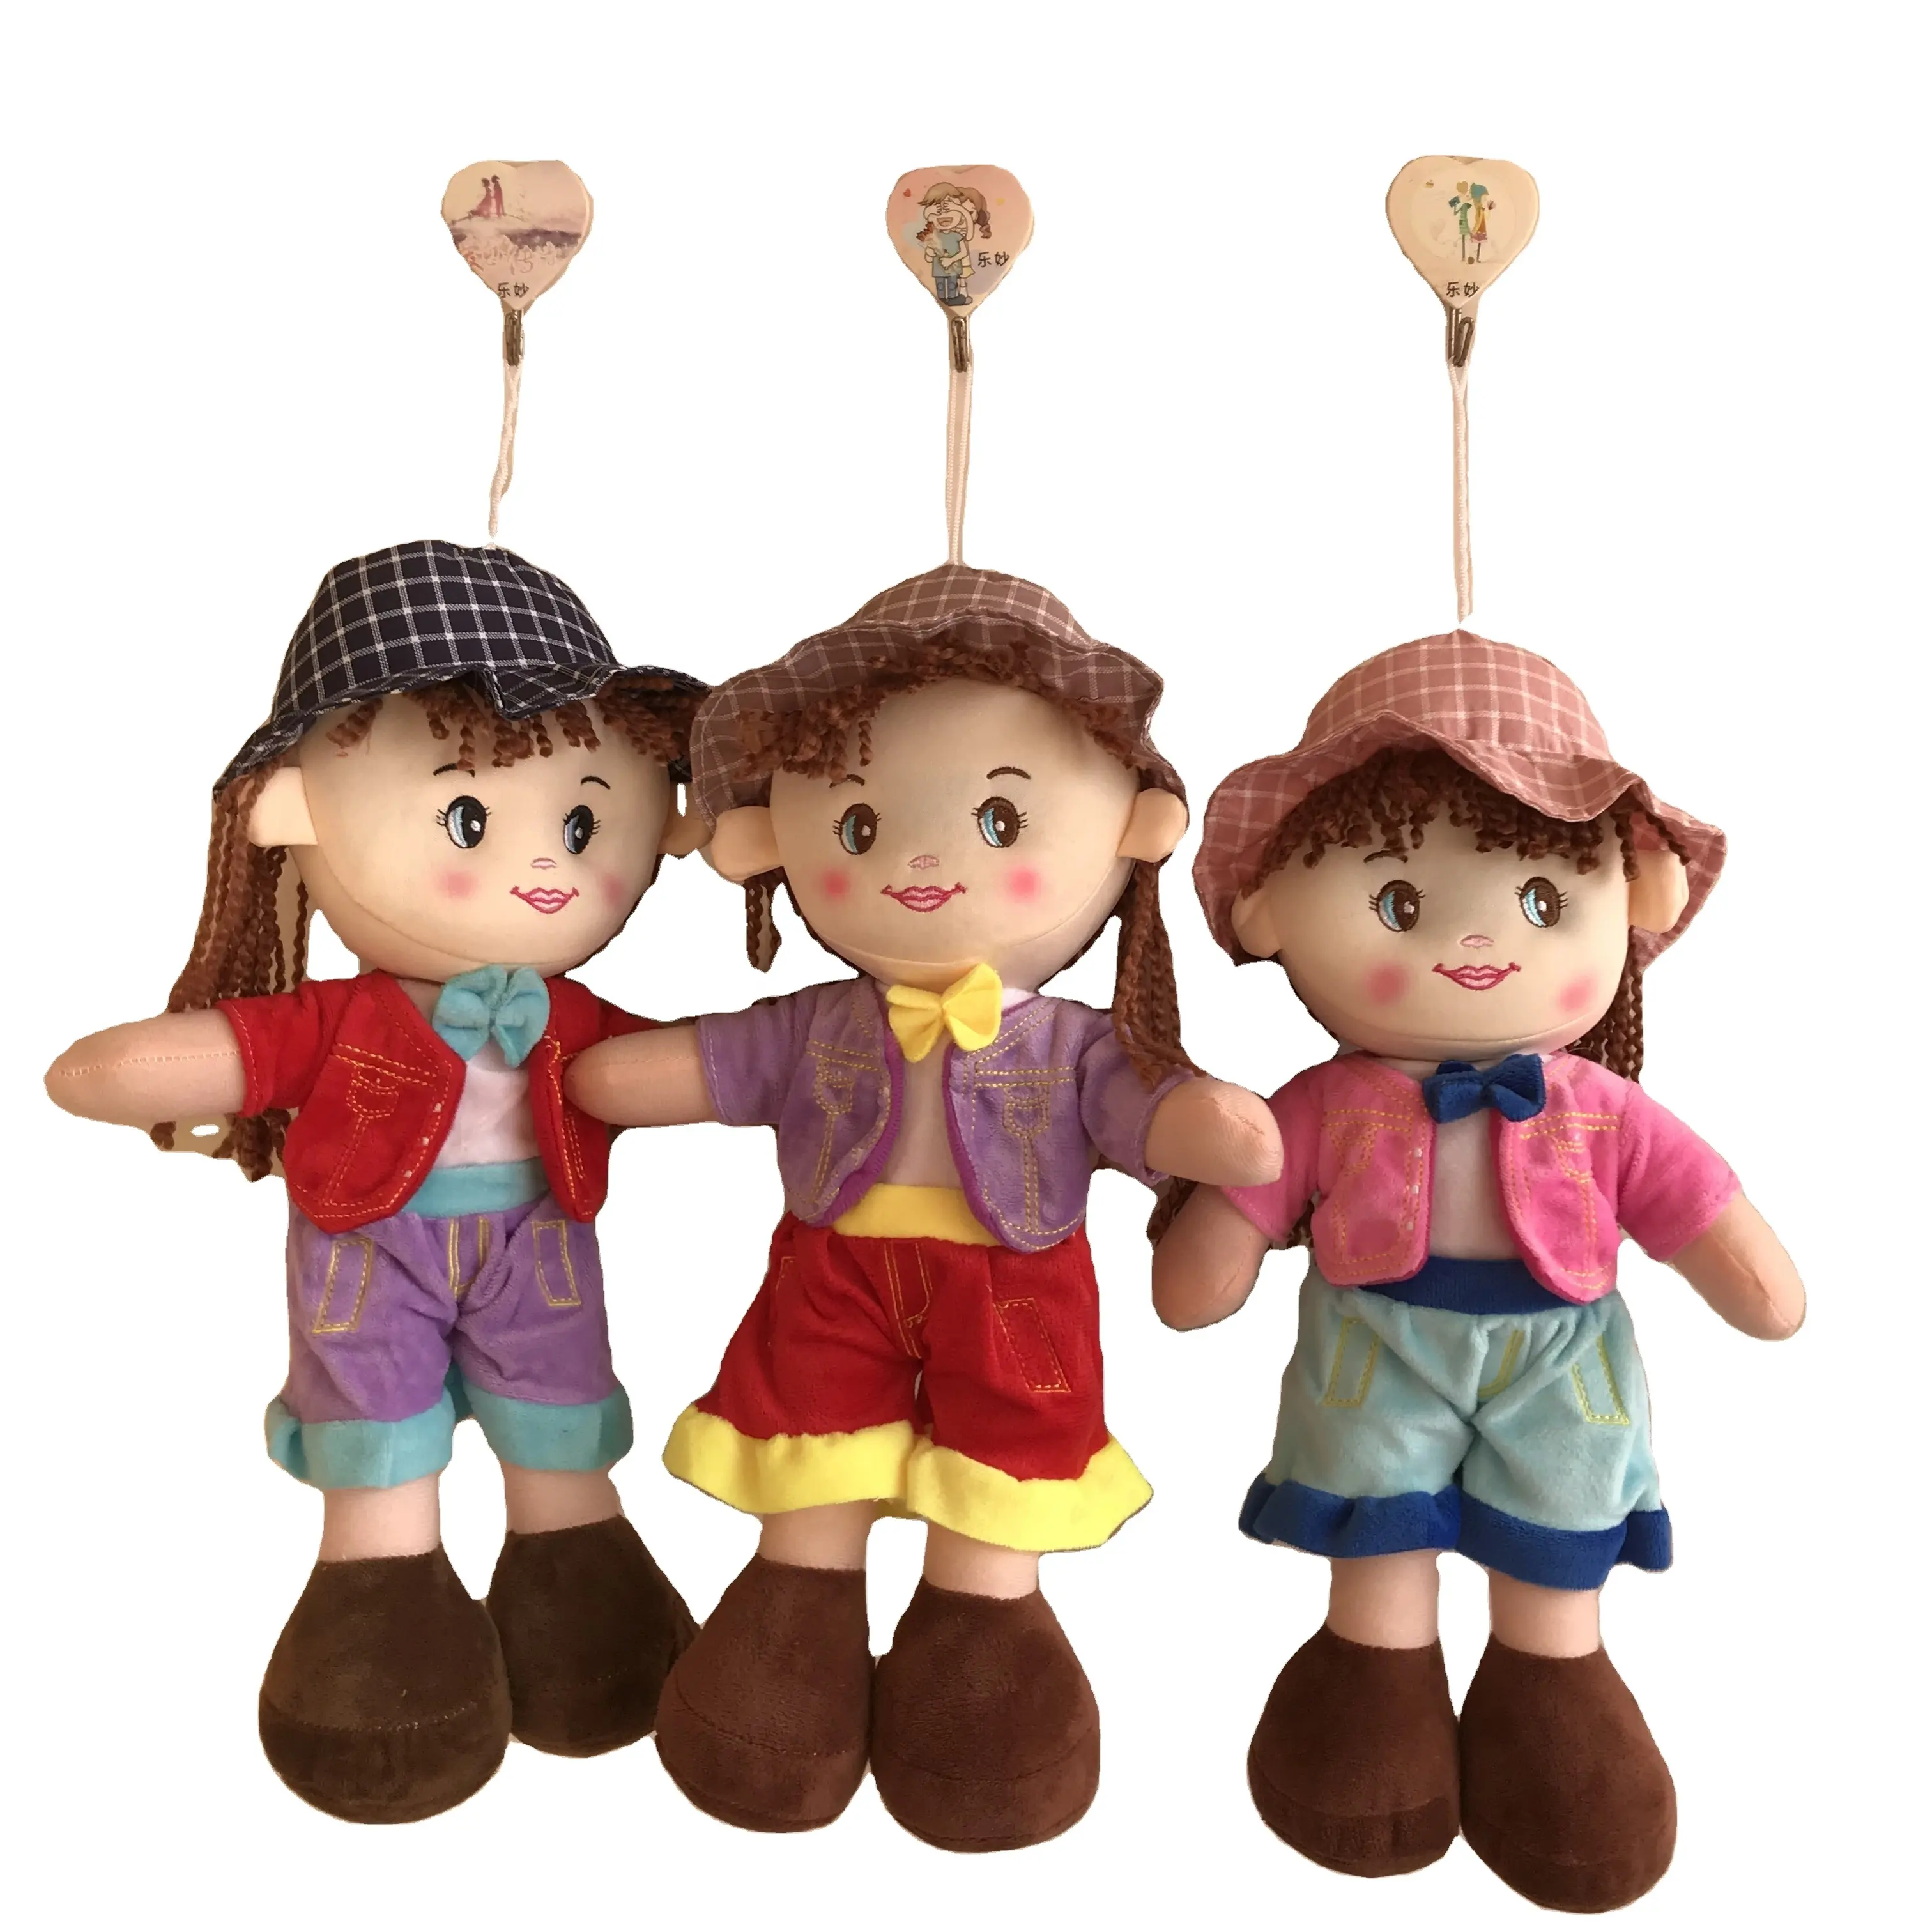 Custom Colourful Cloth Rag Doll with Yarn Hair soft plush baby dolls toys